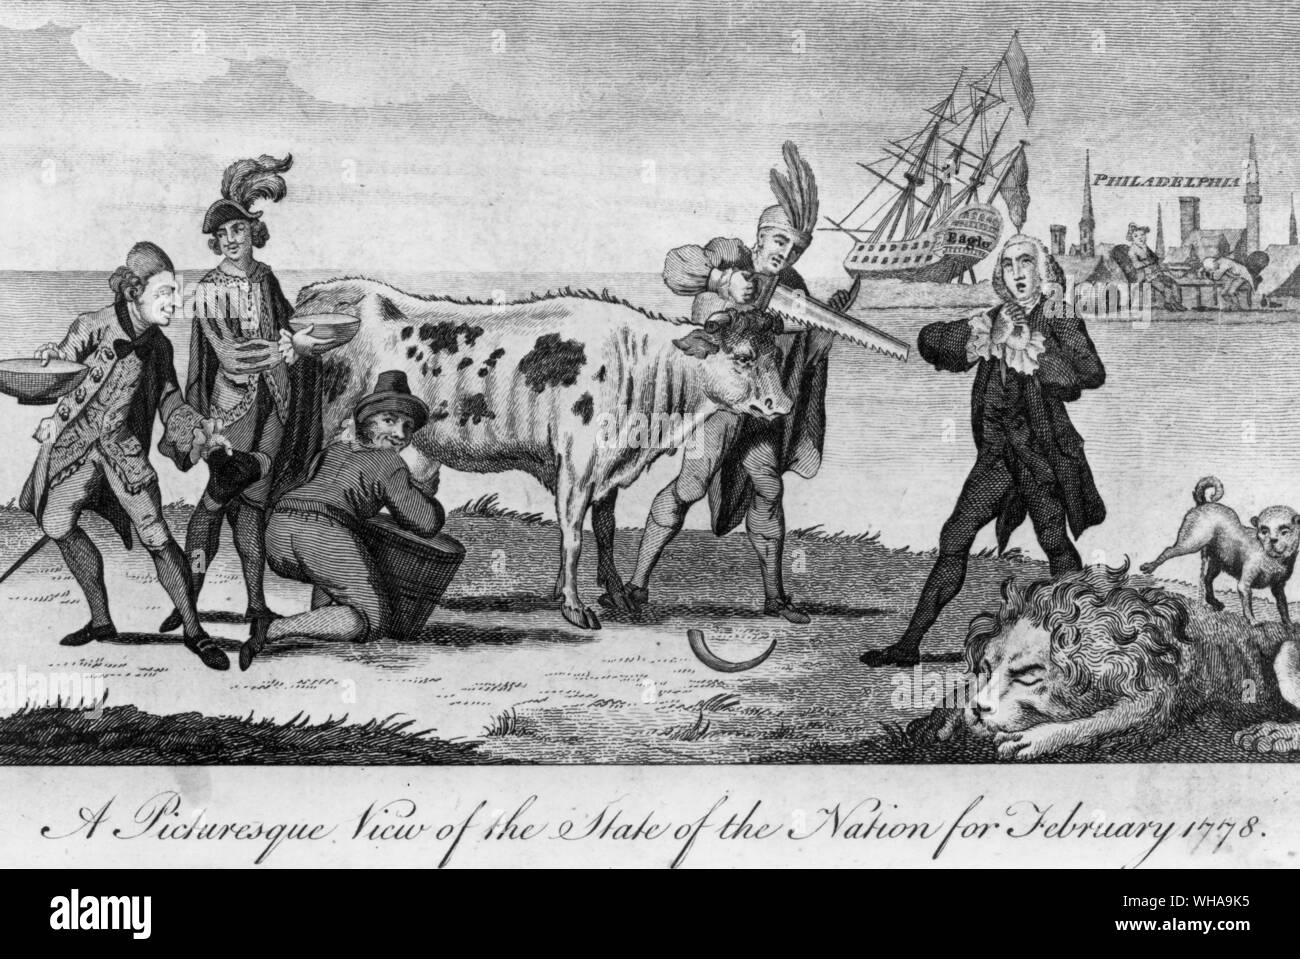 Einen malerischen Blick auf den Zustand der Nation für Februar 1778. Westminster Magazin Februar 1778 Stockfoto